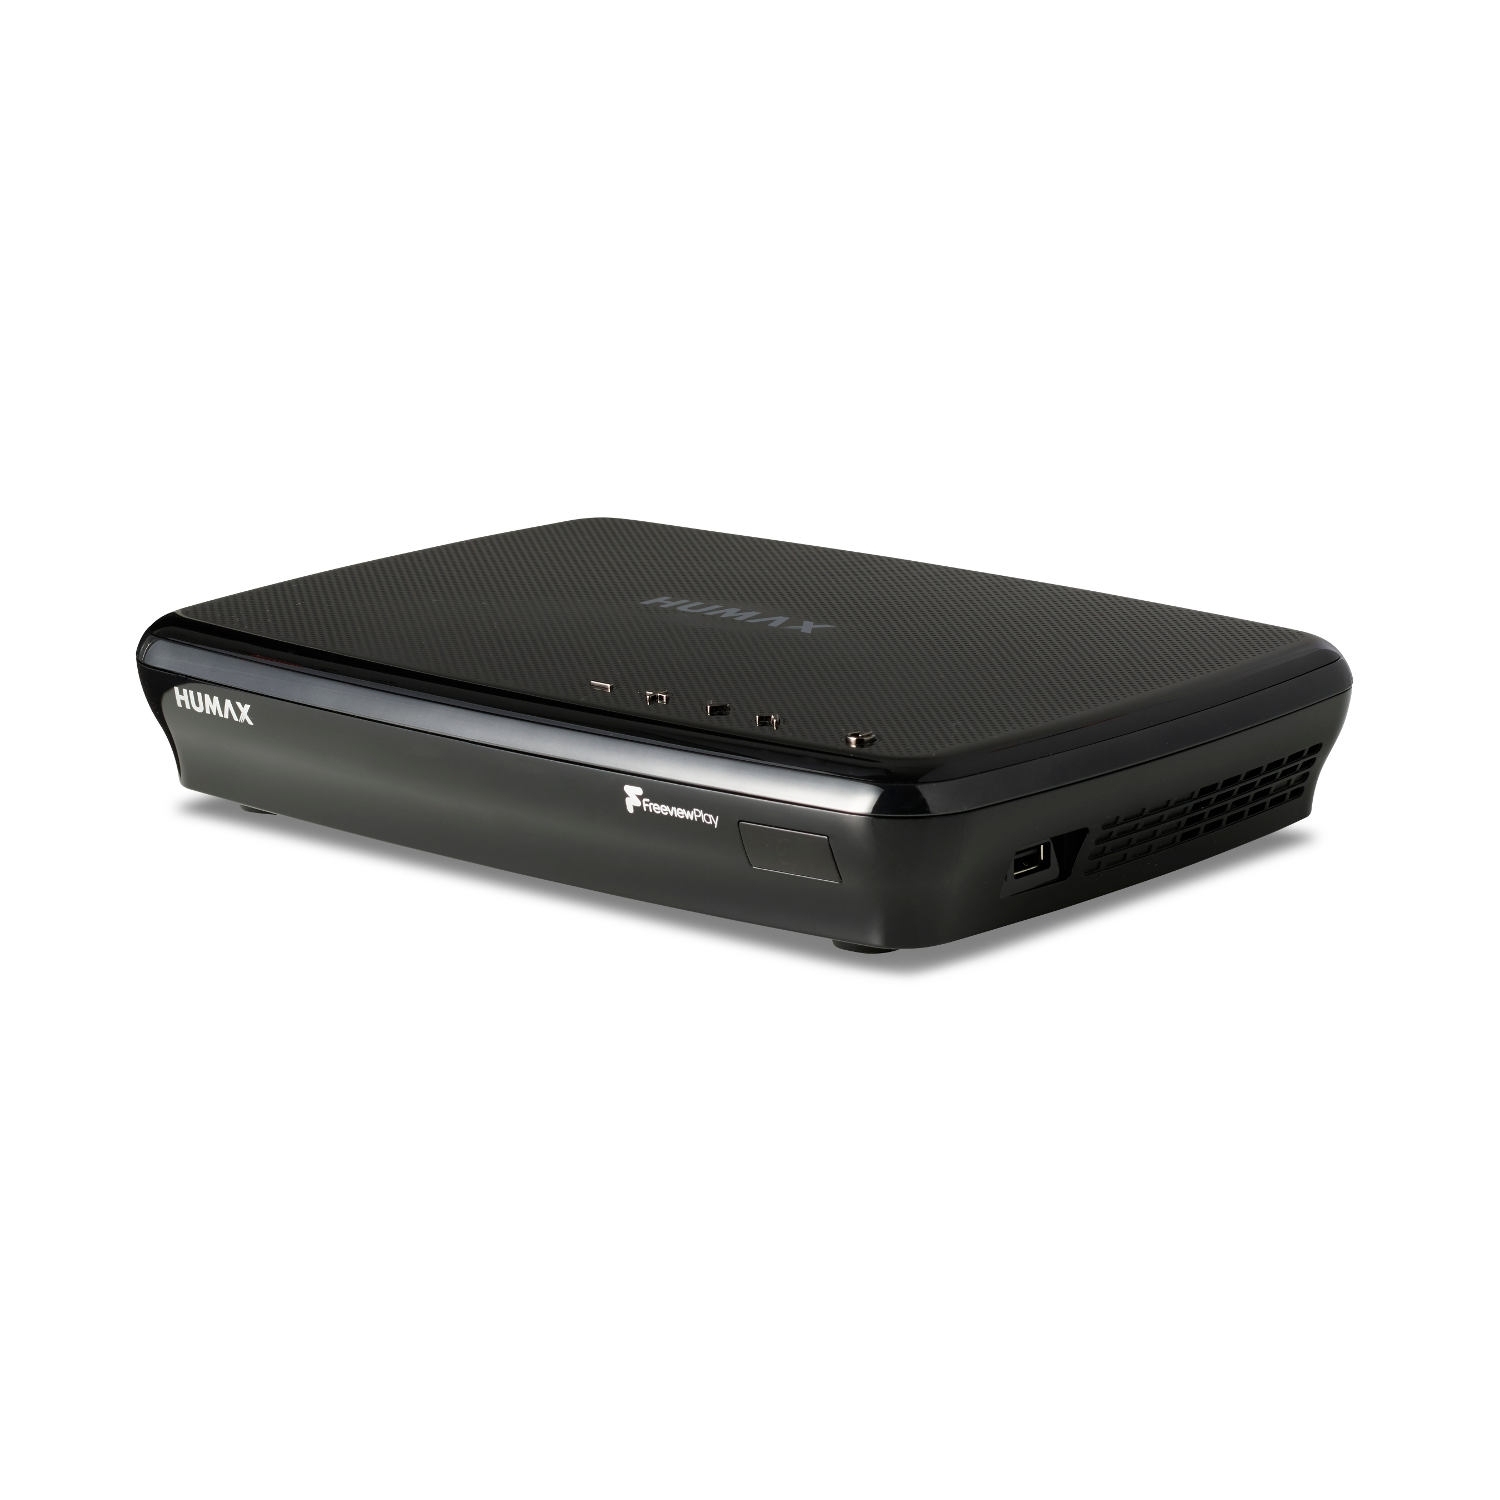 Humax FVP5000T 500GB Digital Video Recorder - 500 GB HDD-Freeview-HD- Smart- Black - 1